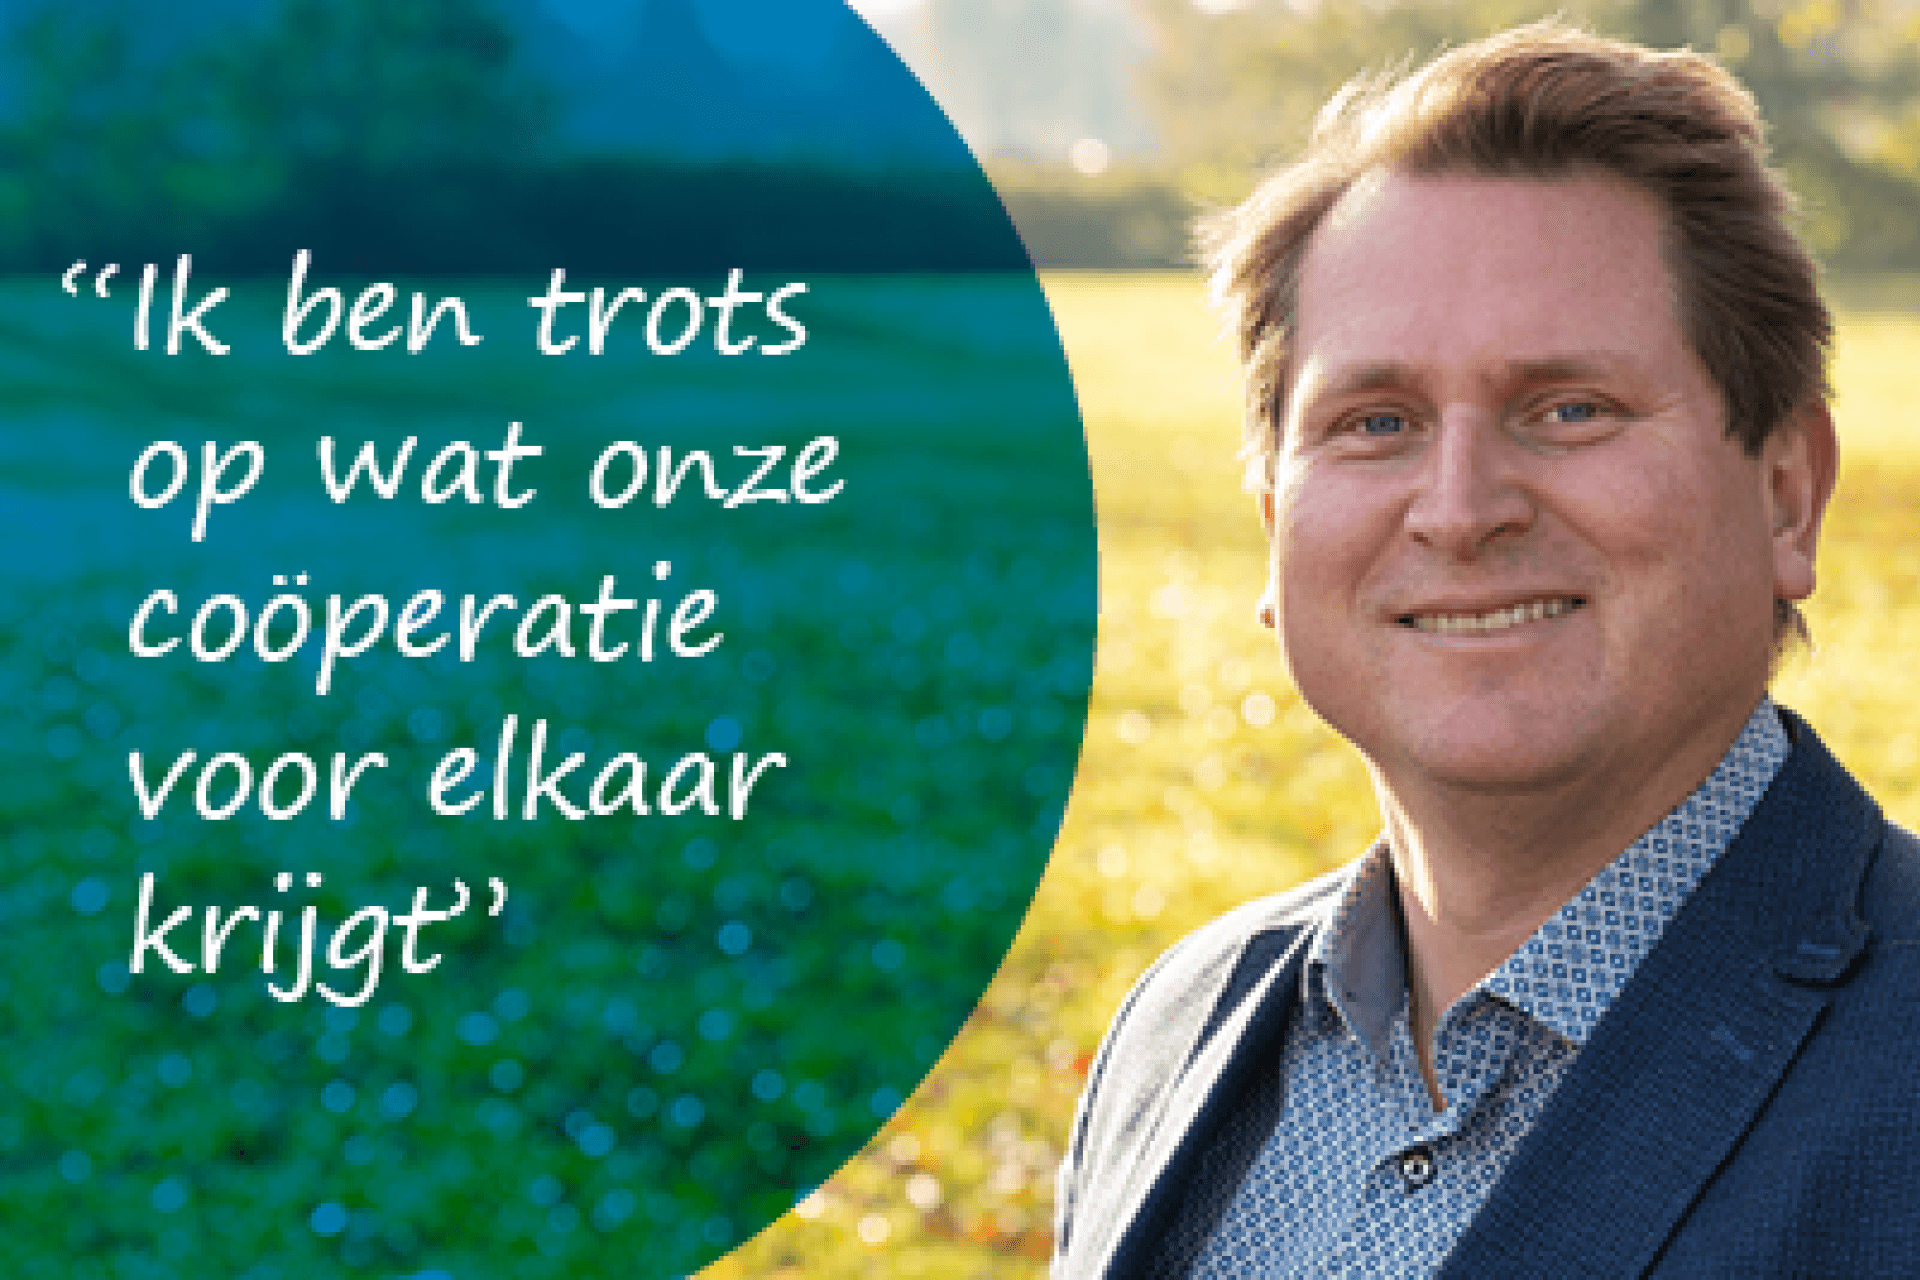 Duurzaam verhaal Martijn: 'Ik ben trots op wat onze coöperatie voor elkaar krijgt'